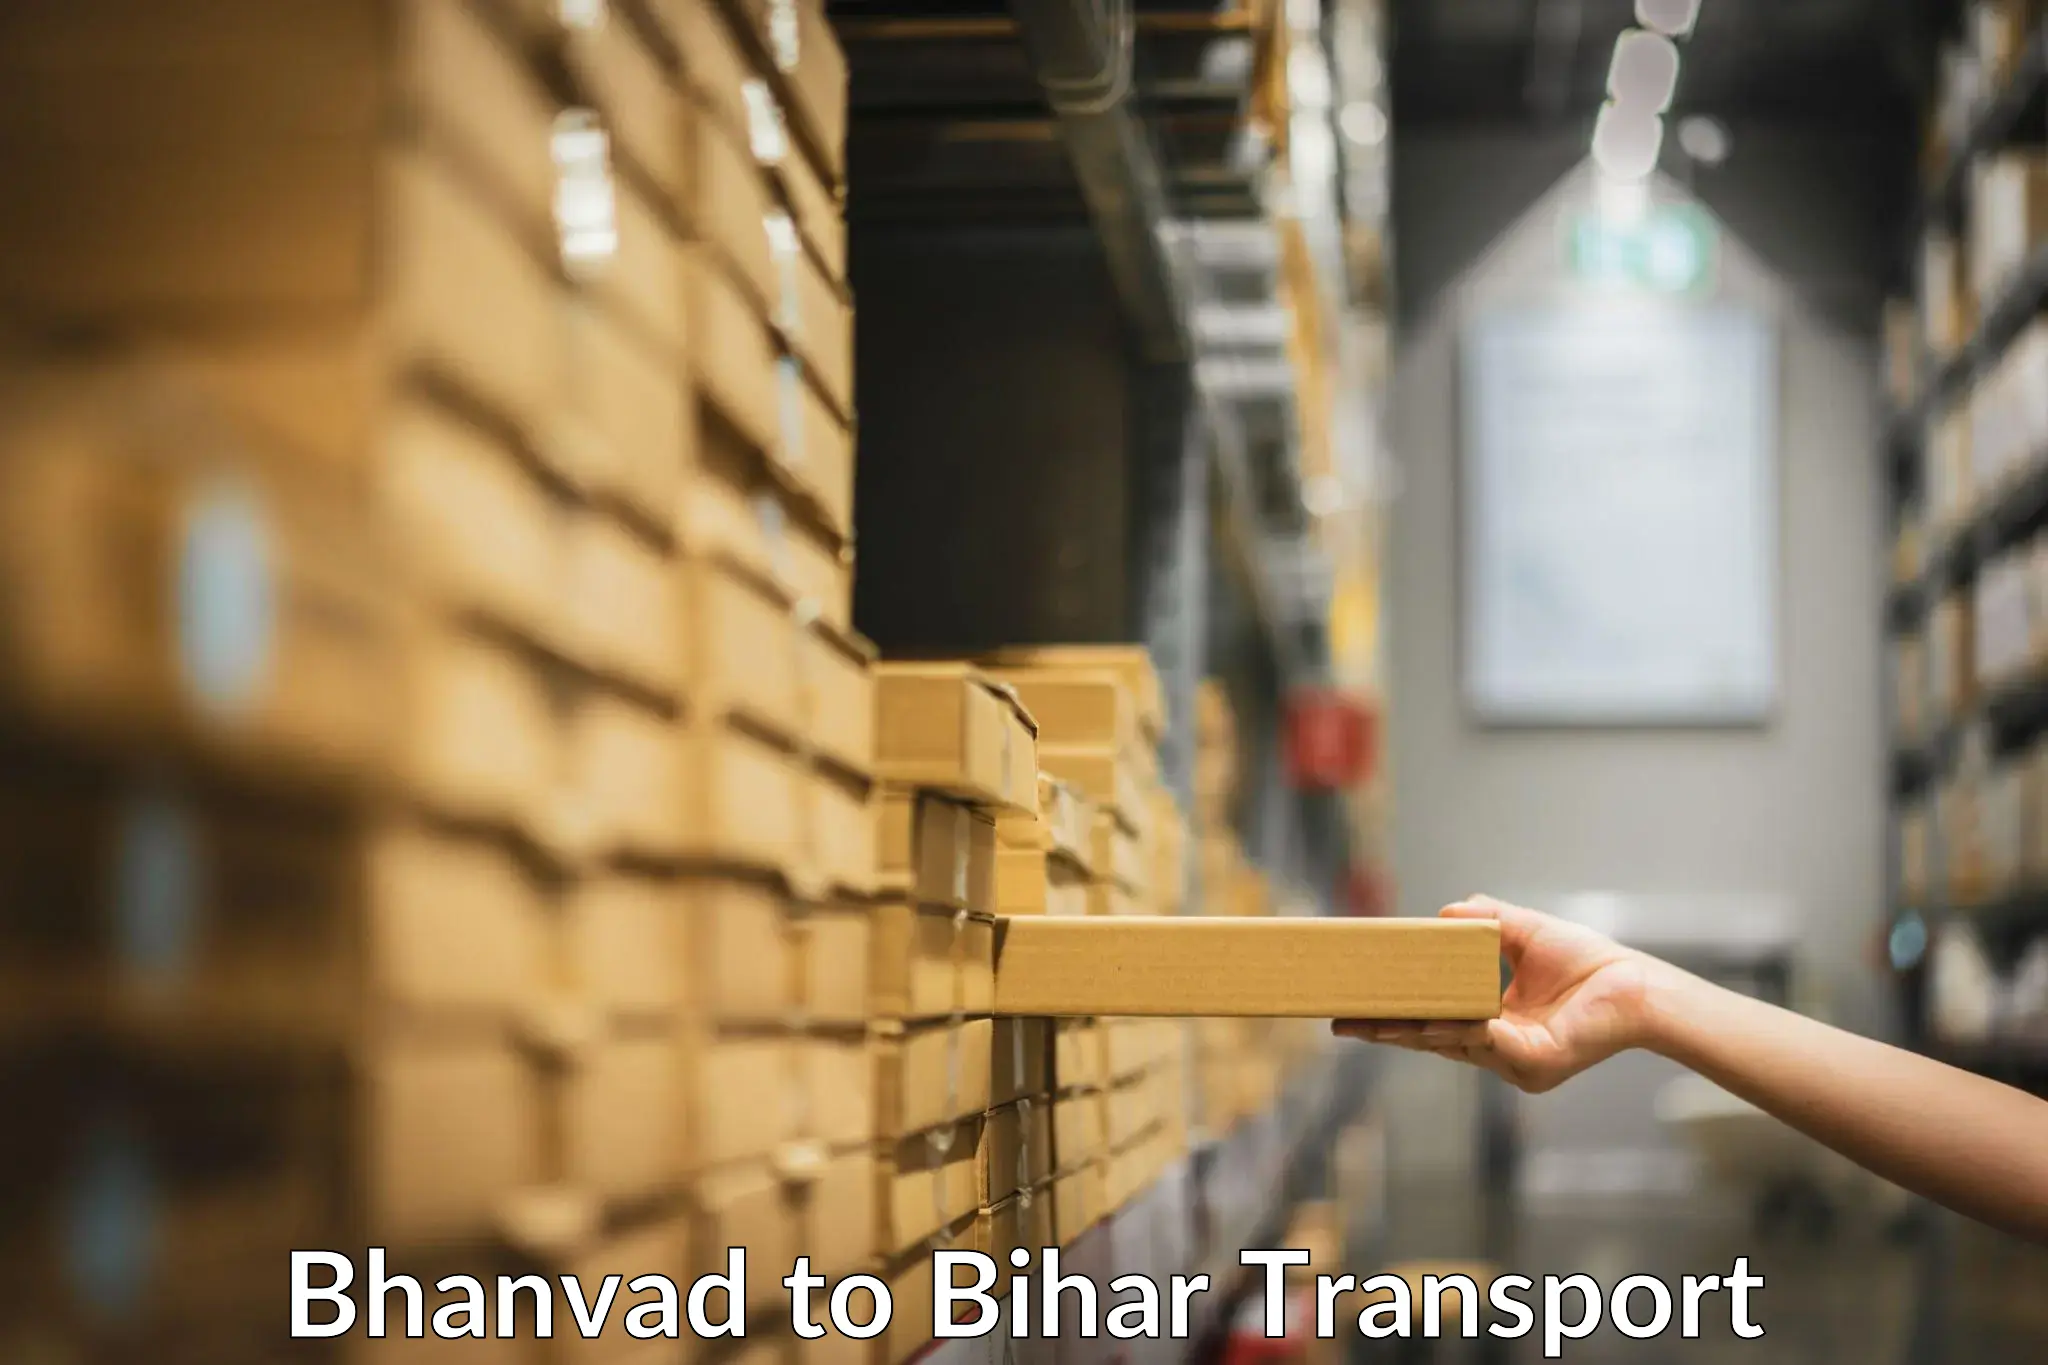 Cargo transport services Bhanvad to IIIT Bhagalpur